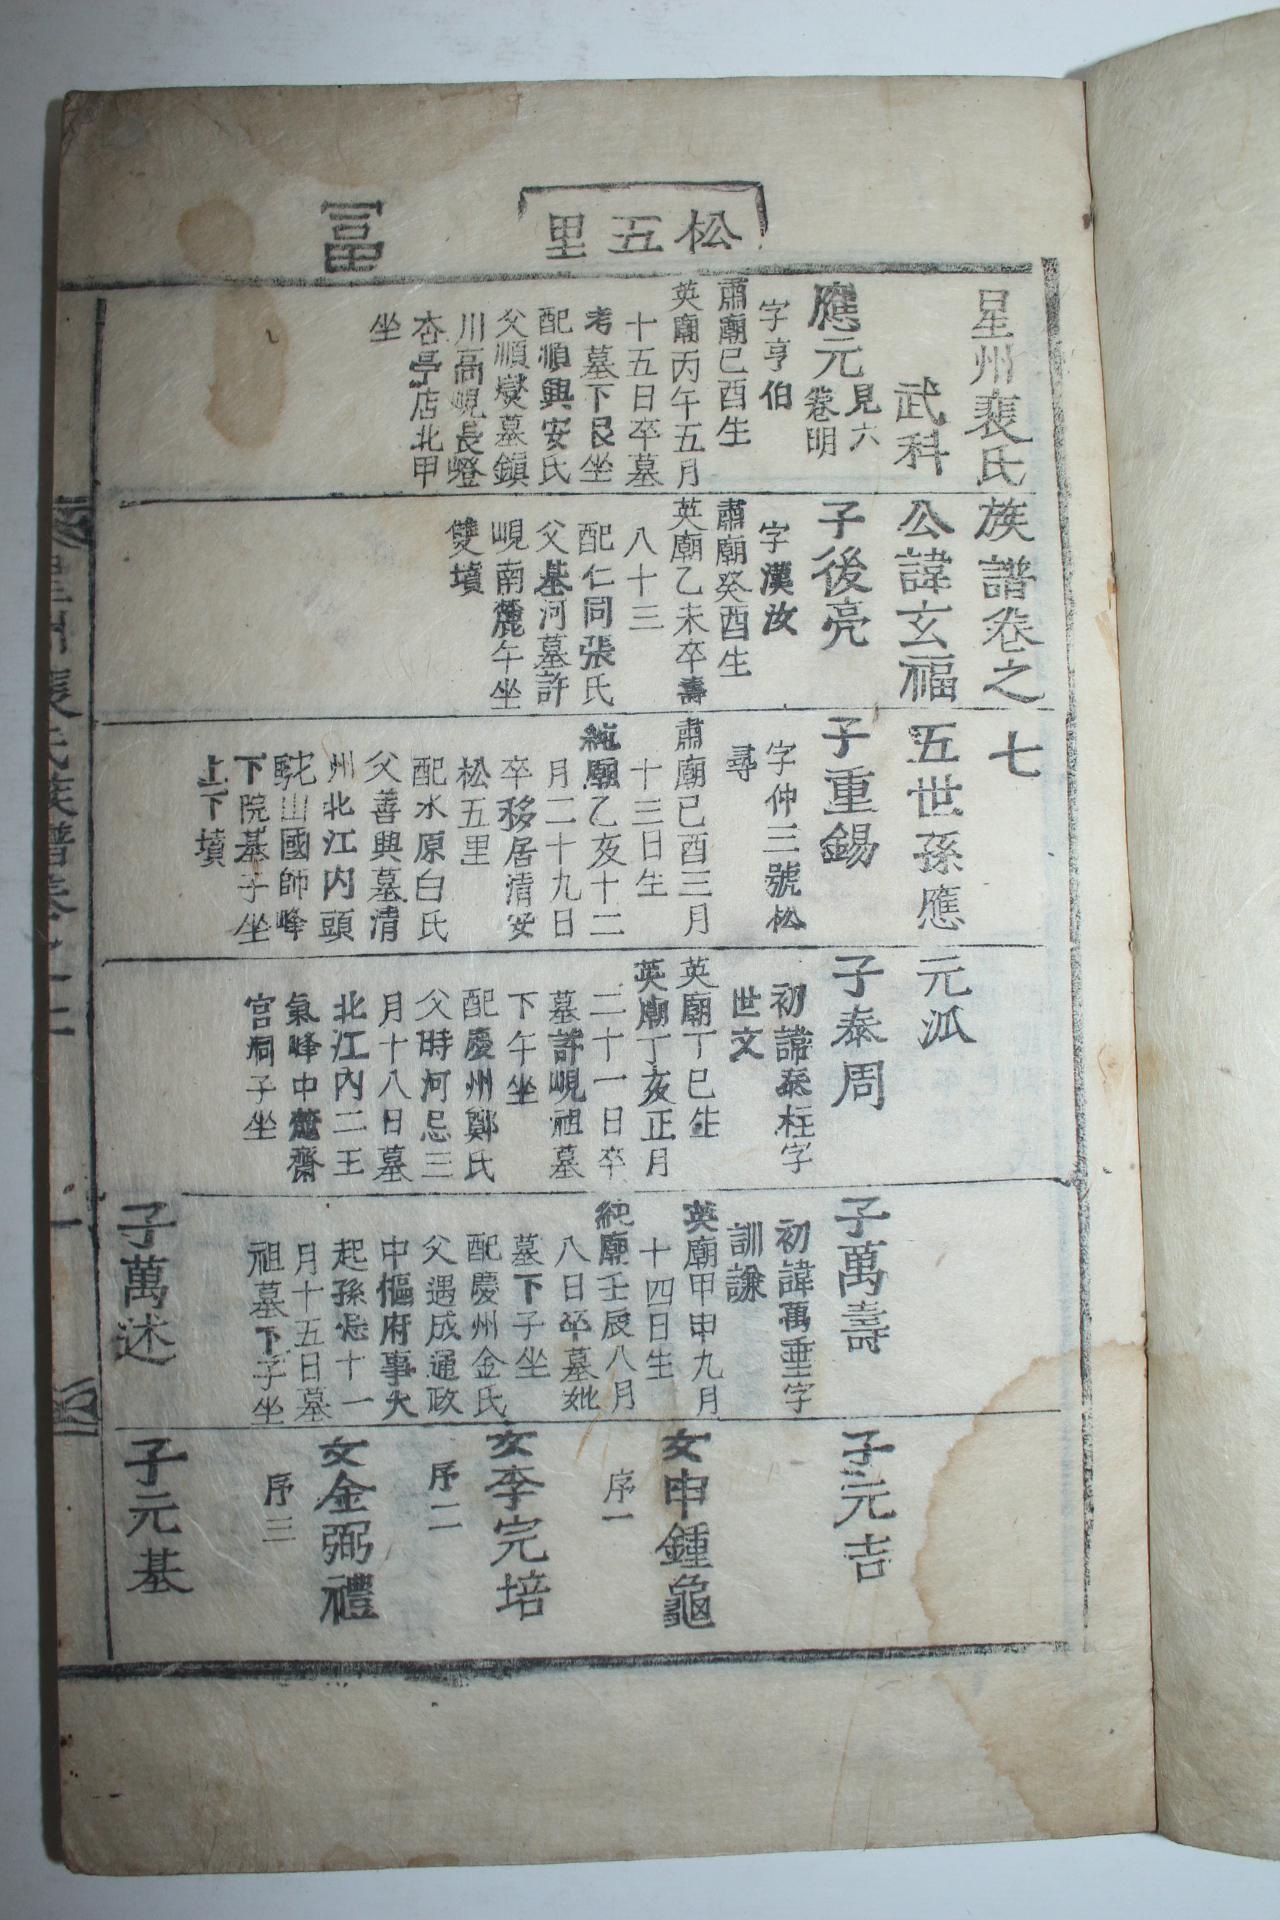 1868년 목활자본 성주배씨족보(星州裵氏族譜) 7권7책완질